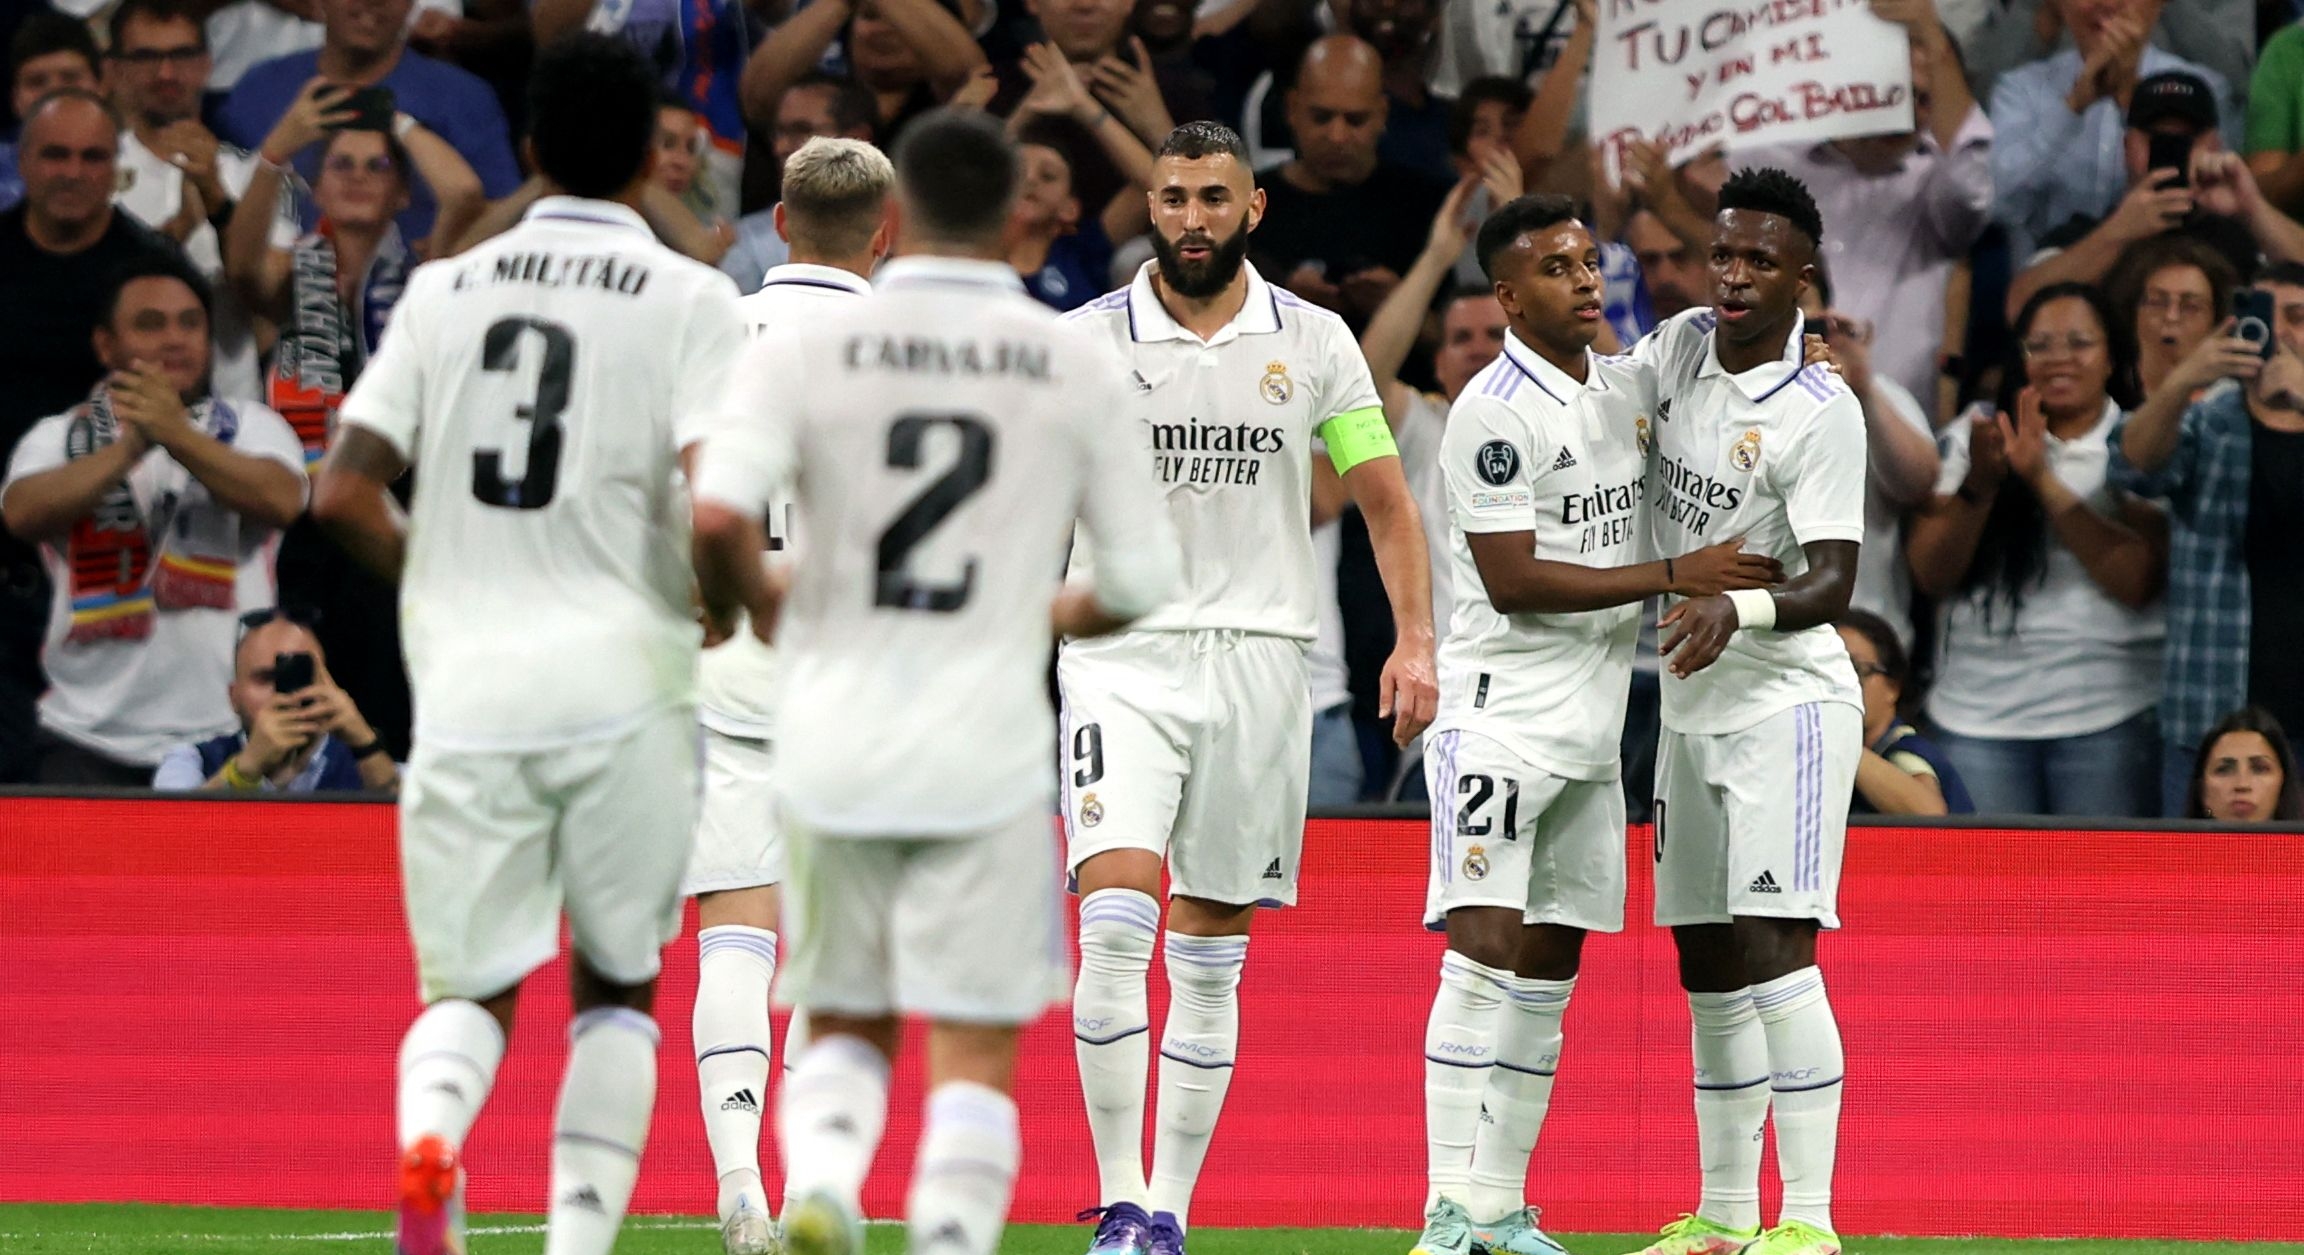 El Real Madrid continúa invicto y sin perder puntos en este inicio de la Champions League. (Foto Prensa Libre: AFP)